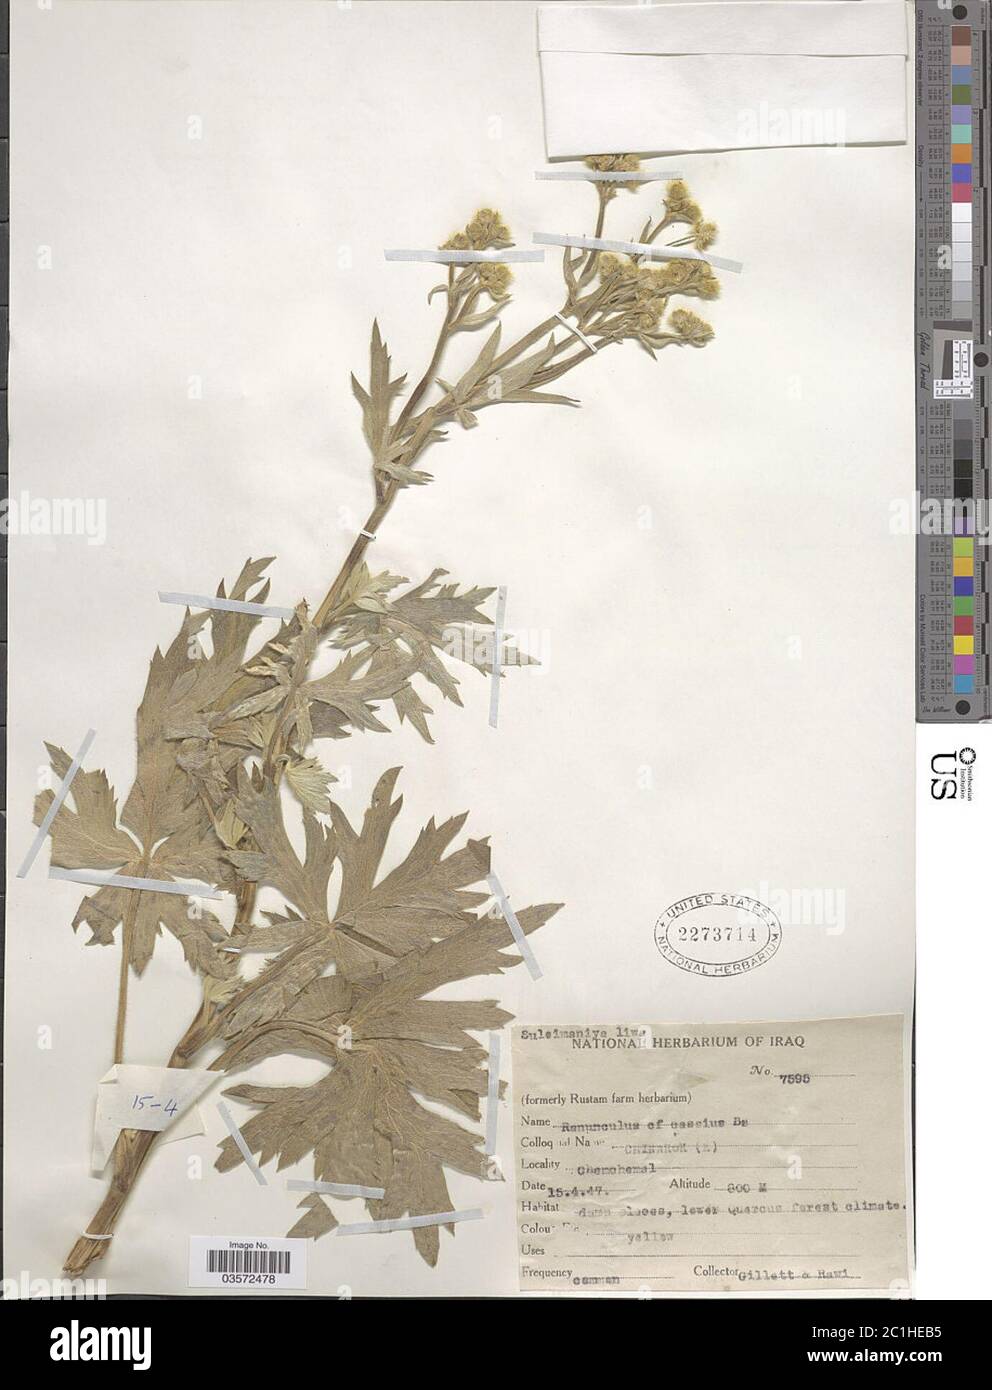 Ranunculus cassius Boiss Ranunculus cassius Boiss. Stock Photo